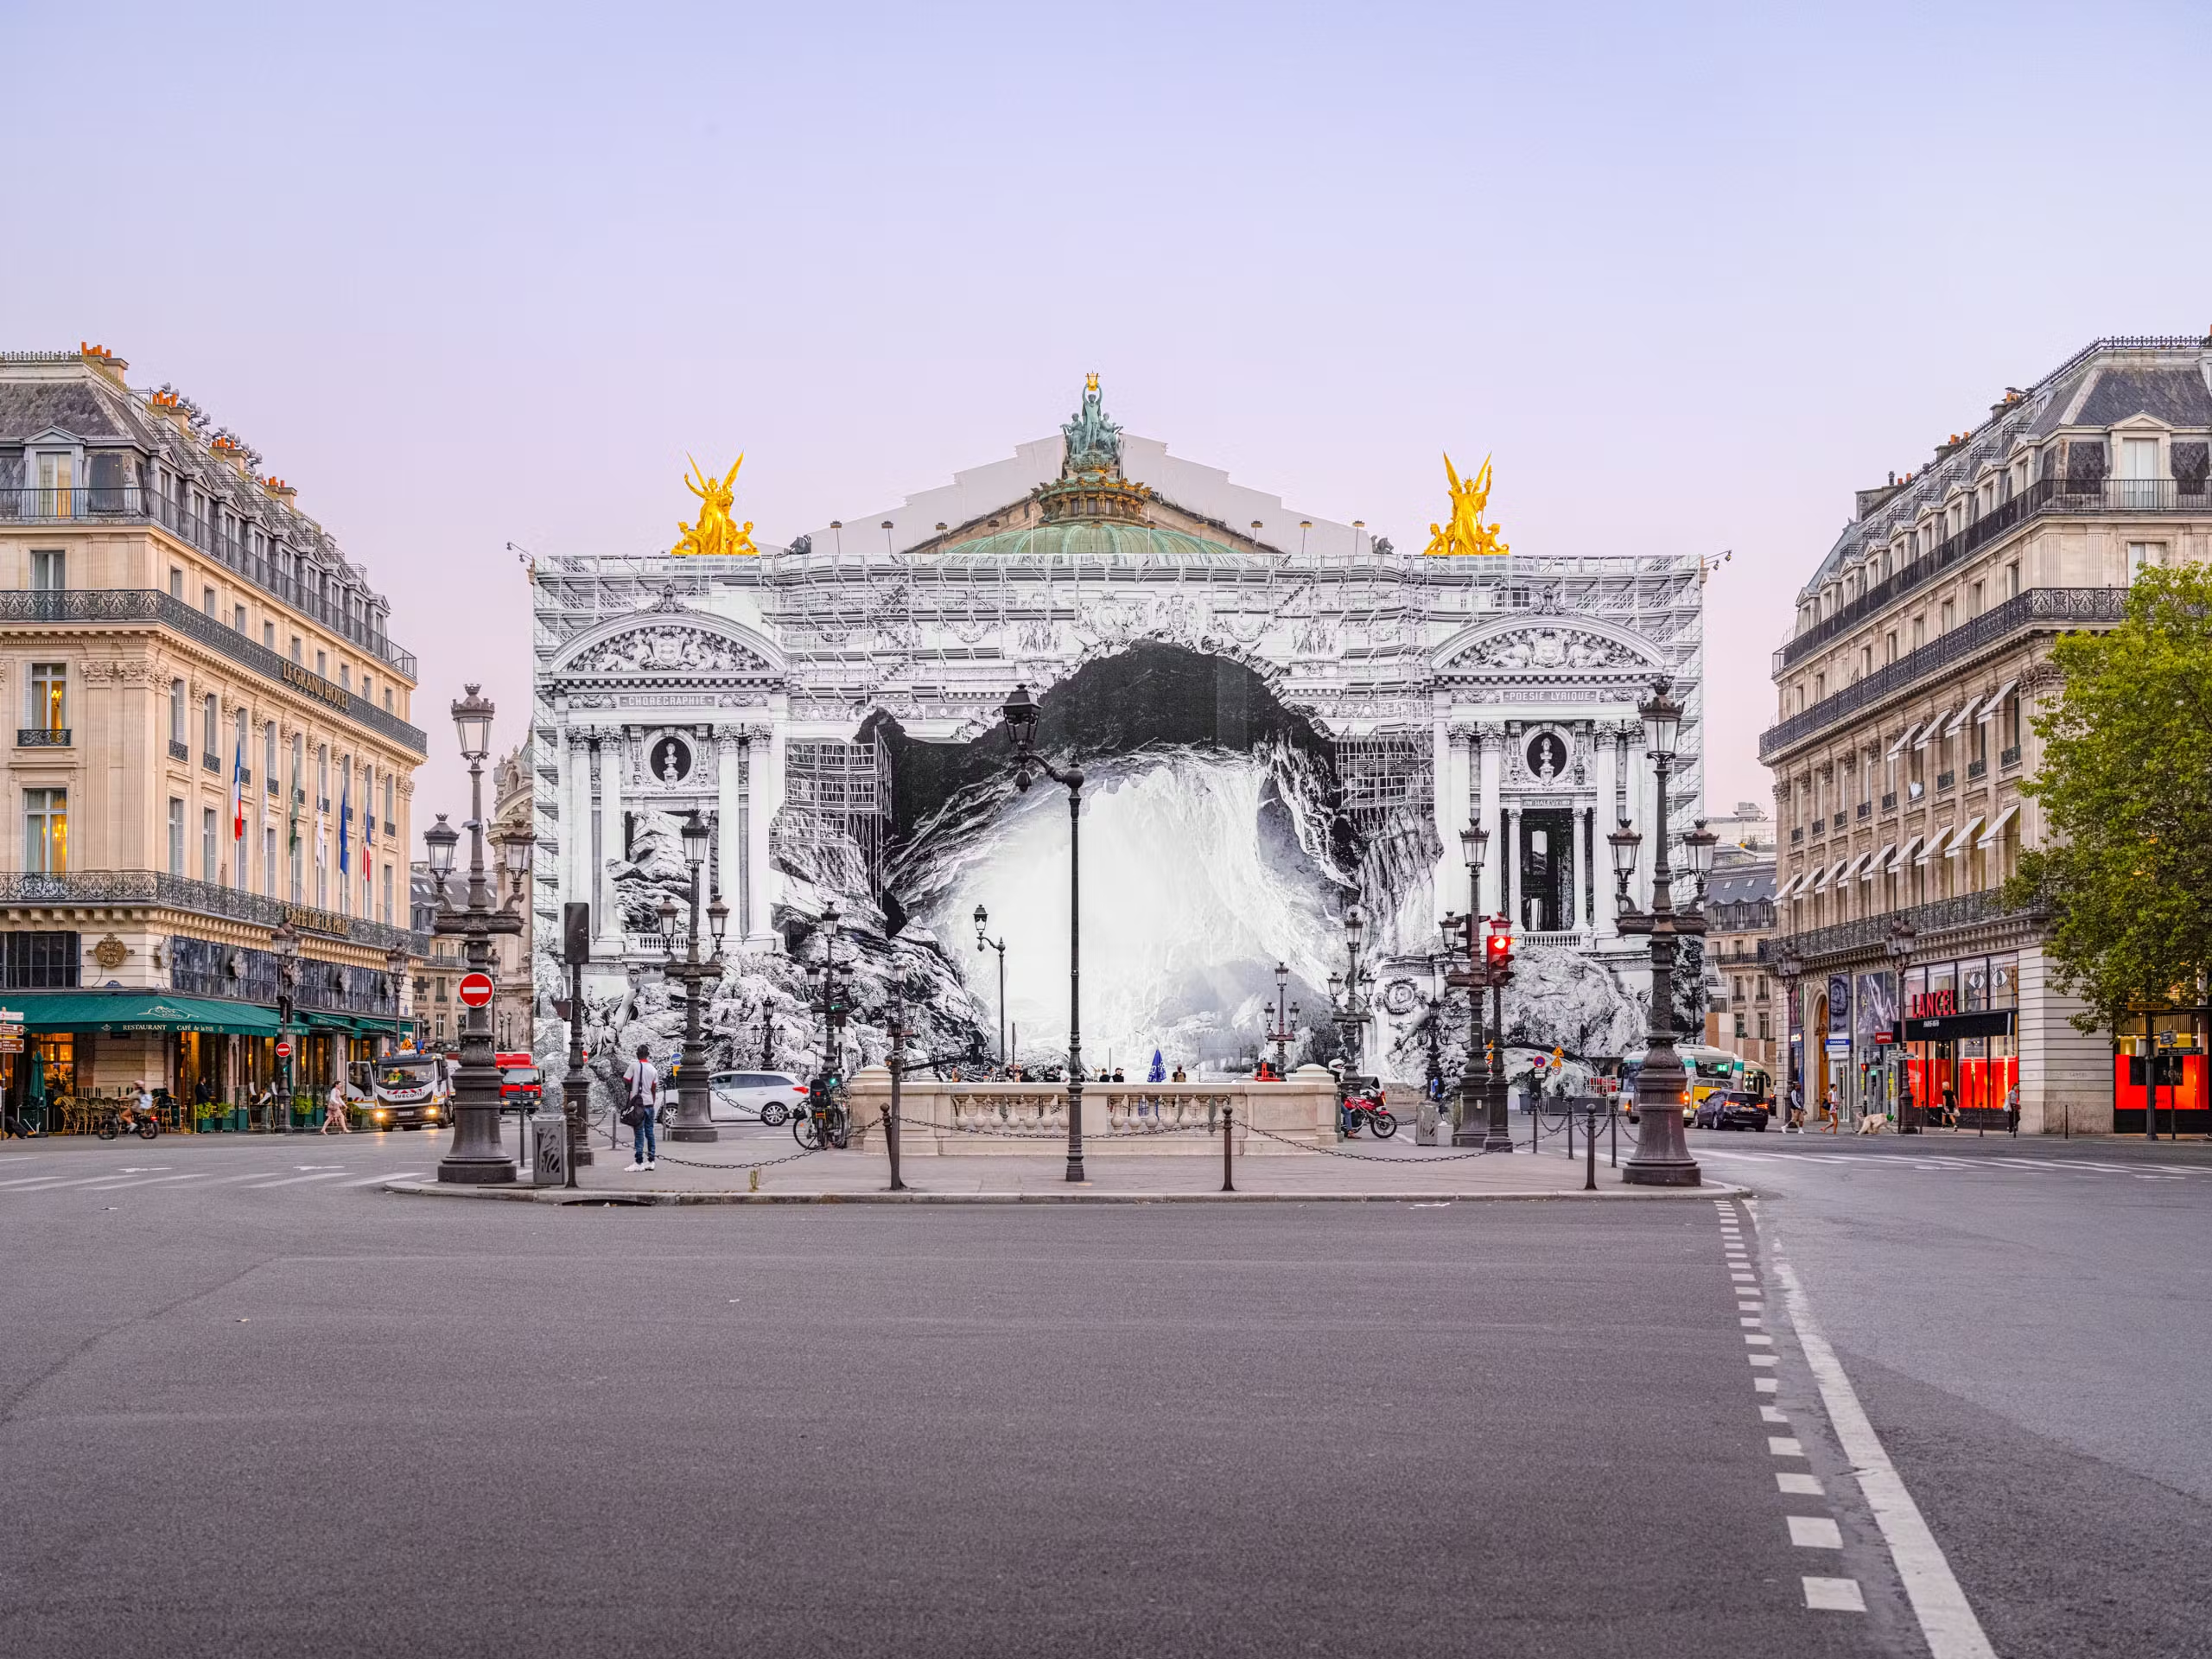 JR transforma la Ópera Garnier de París en una caverna